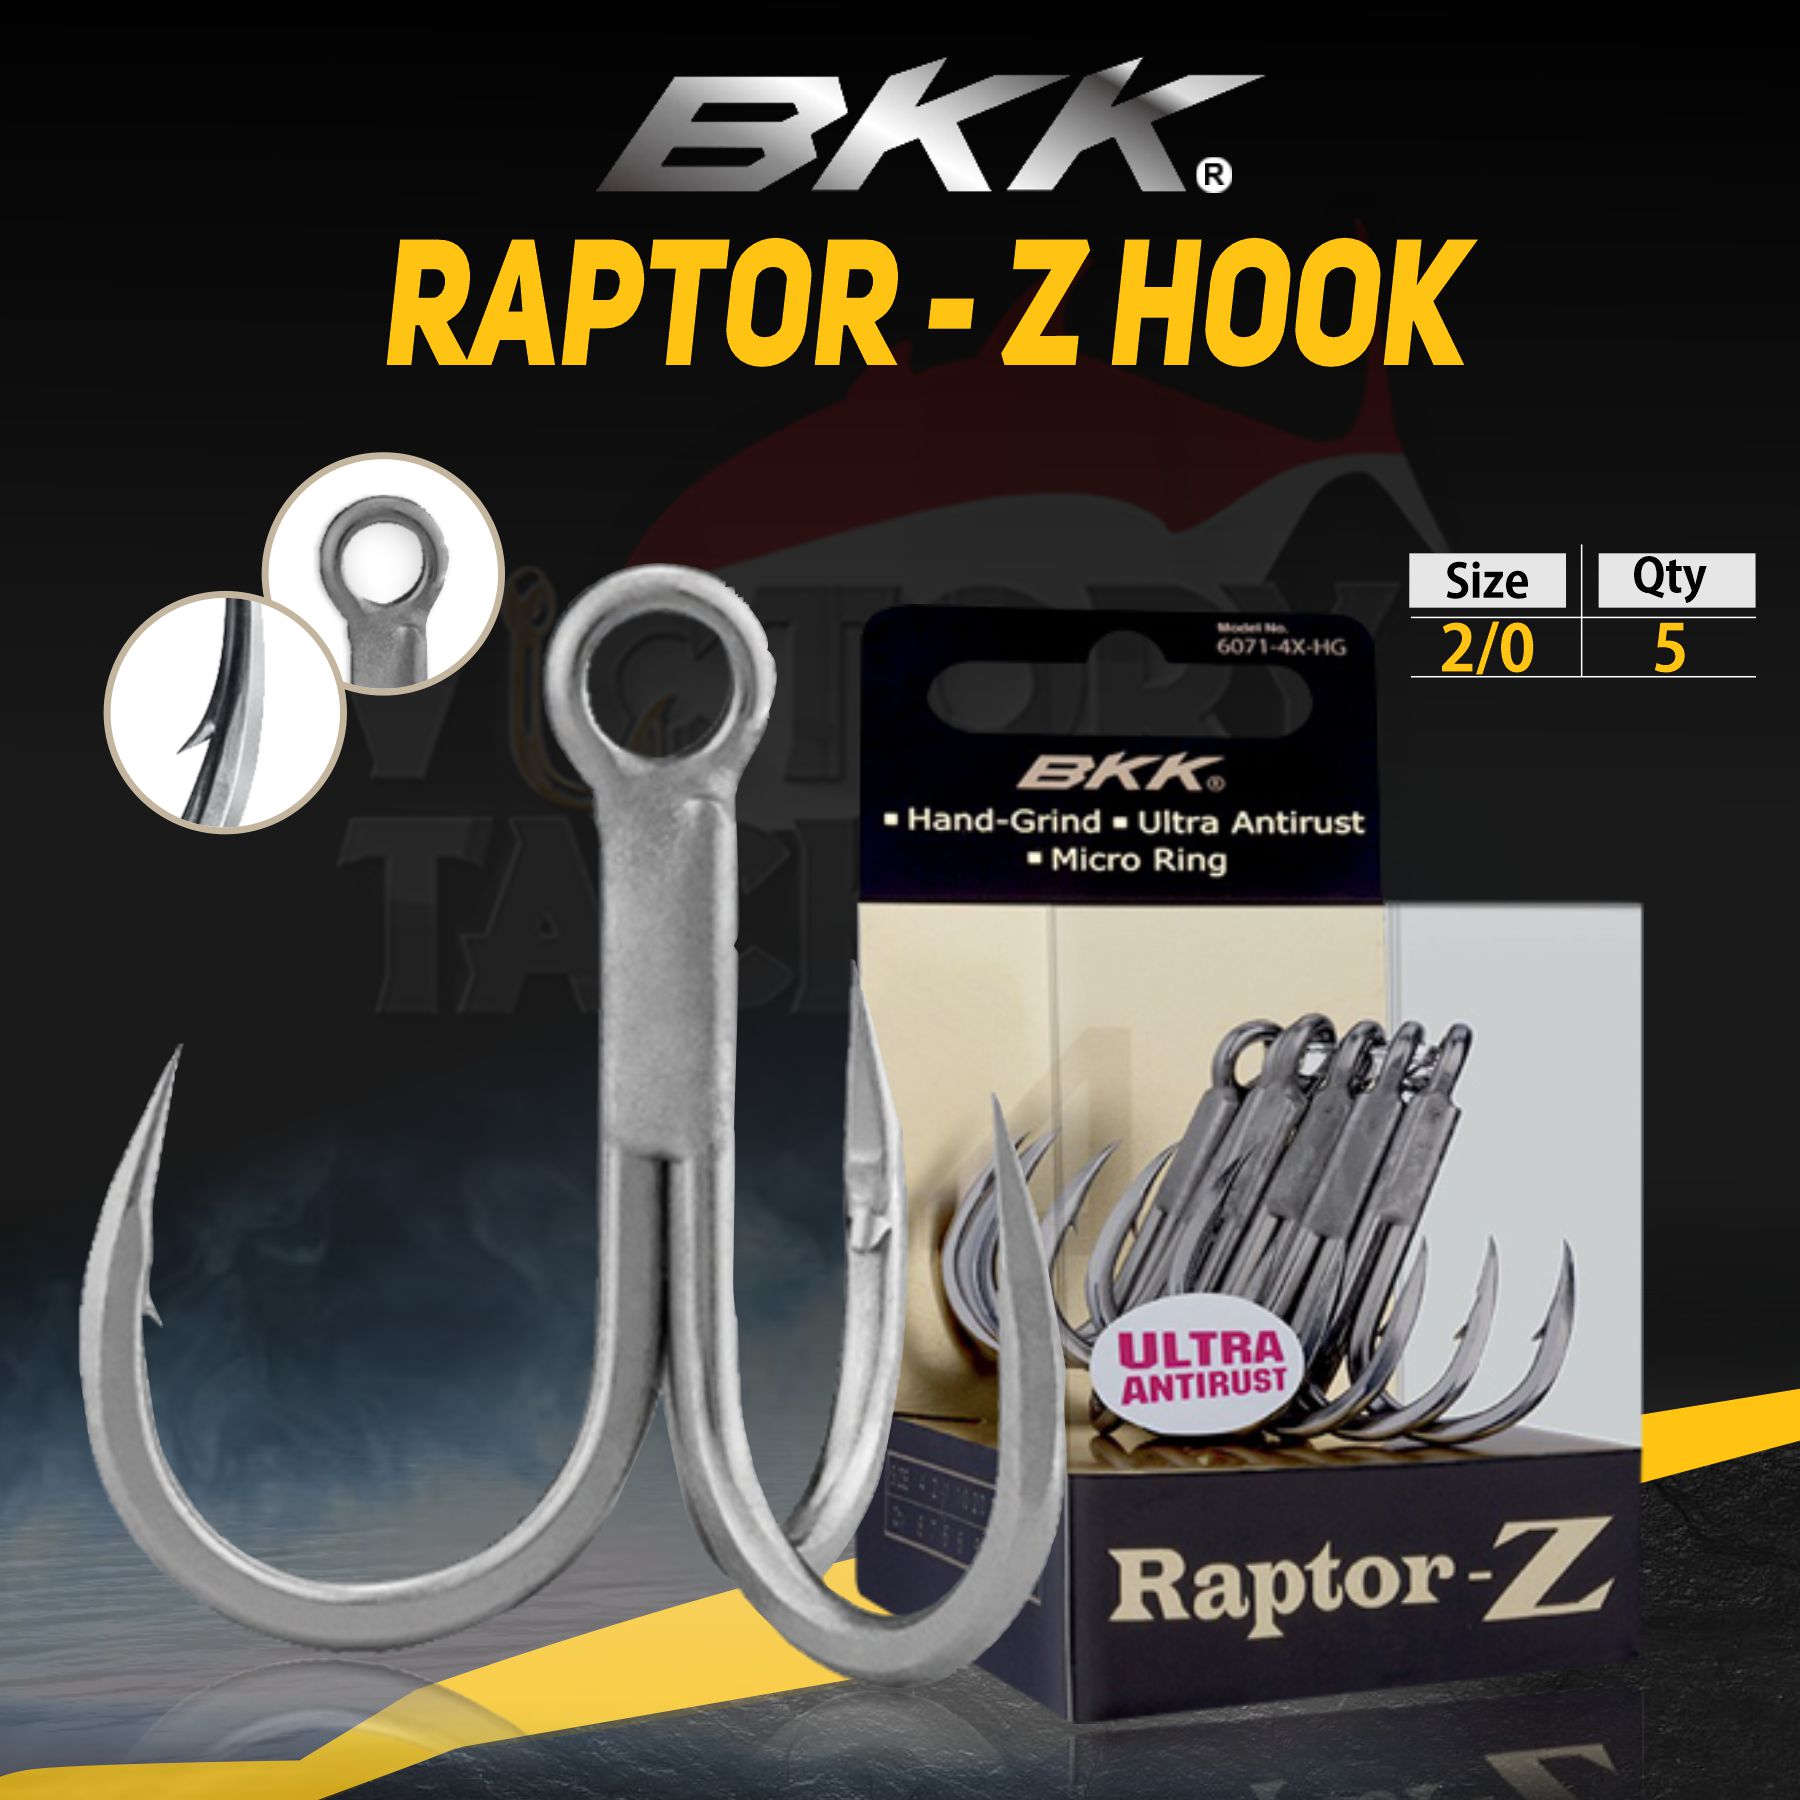 BKK RAPTOR-Z - 6071- 4X-HG